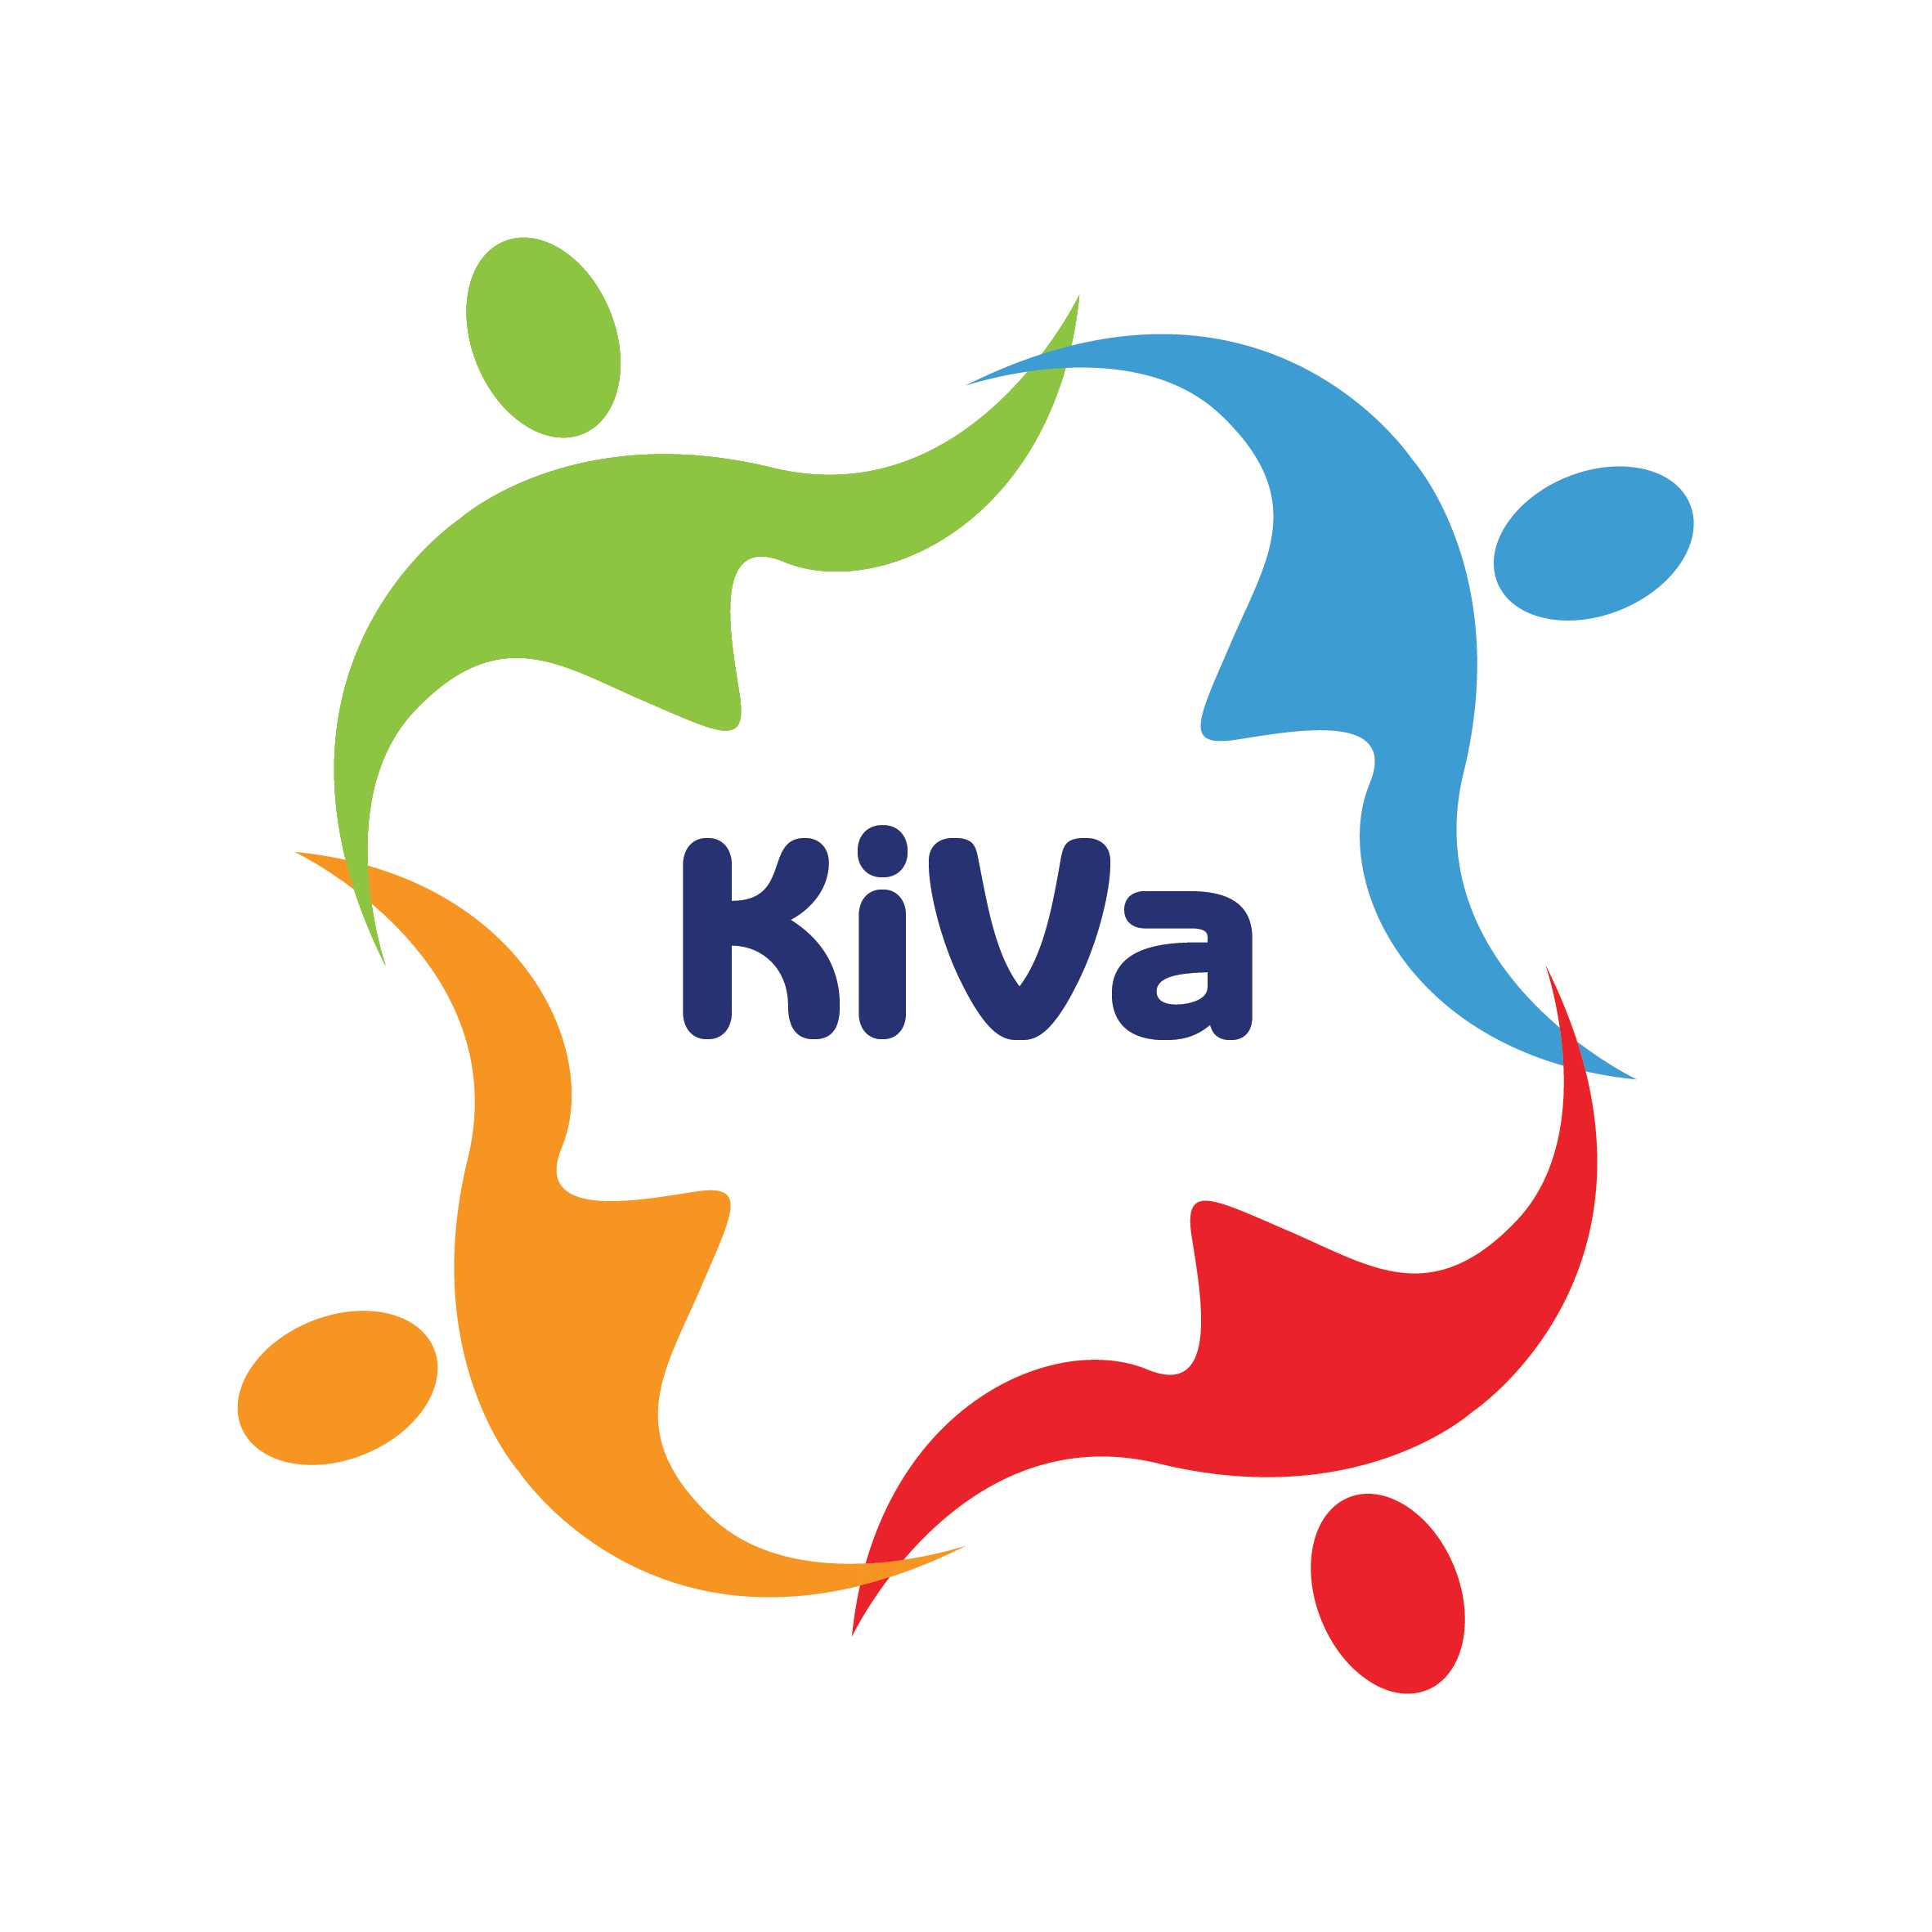 Antipestprogramma: KiVA betekent in het Fins fijn of leuk en is bovendien de naam van het wetenschappelijk onderbouwd antipestprogramma dat ontwikkeld is in Finland. KiVa heeft als belangrijkste doel het welbevinden op school te versterken en pest- en cyberpestproblemen te voorkomen (preventie) en op te lossen.